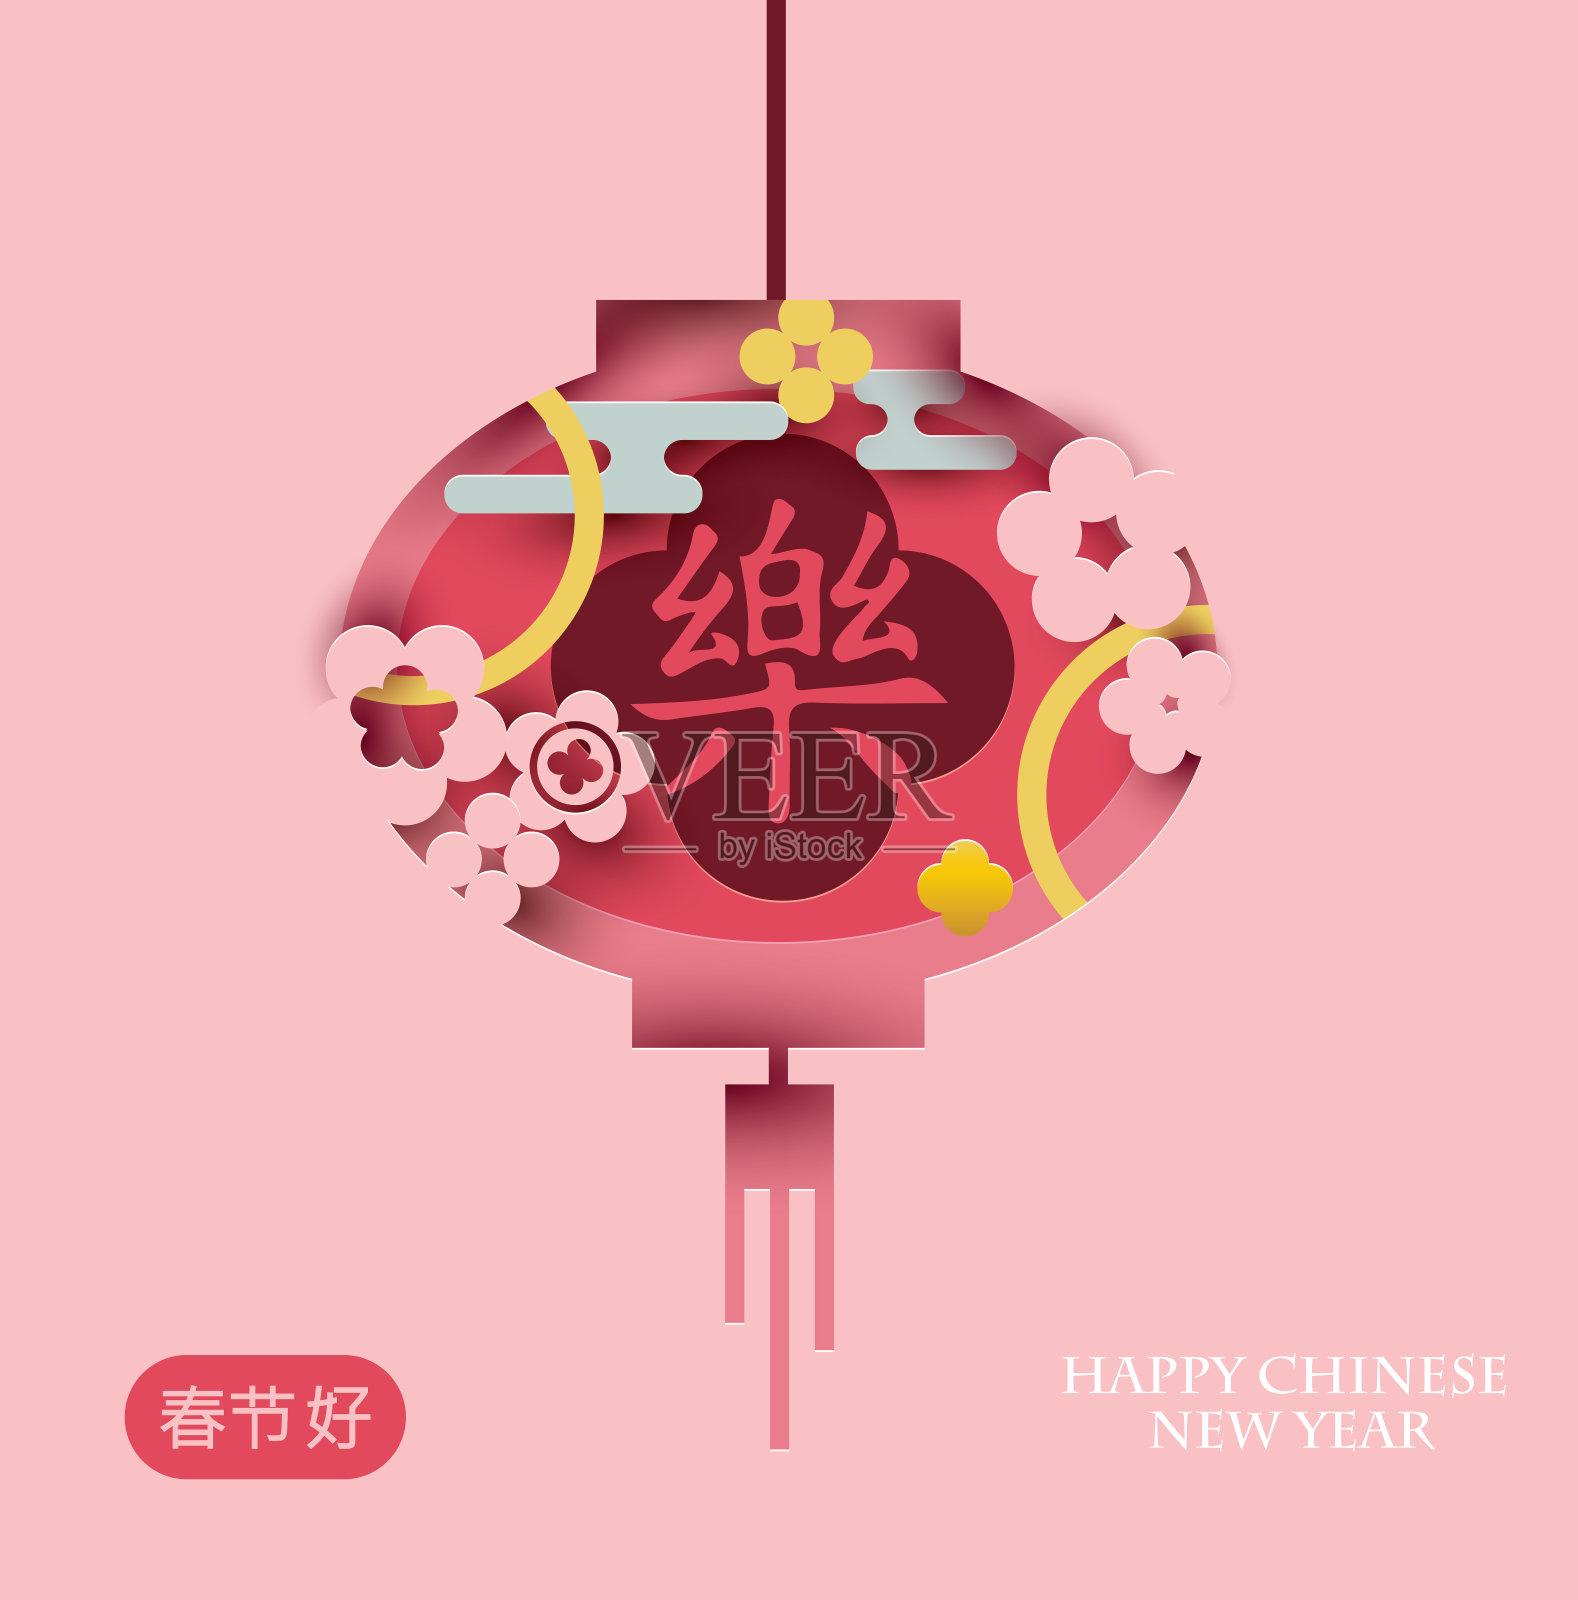 有象形文字(幸福)的中国灯笼。插画图片素材